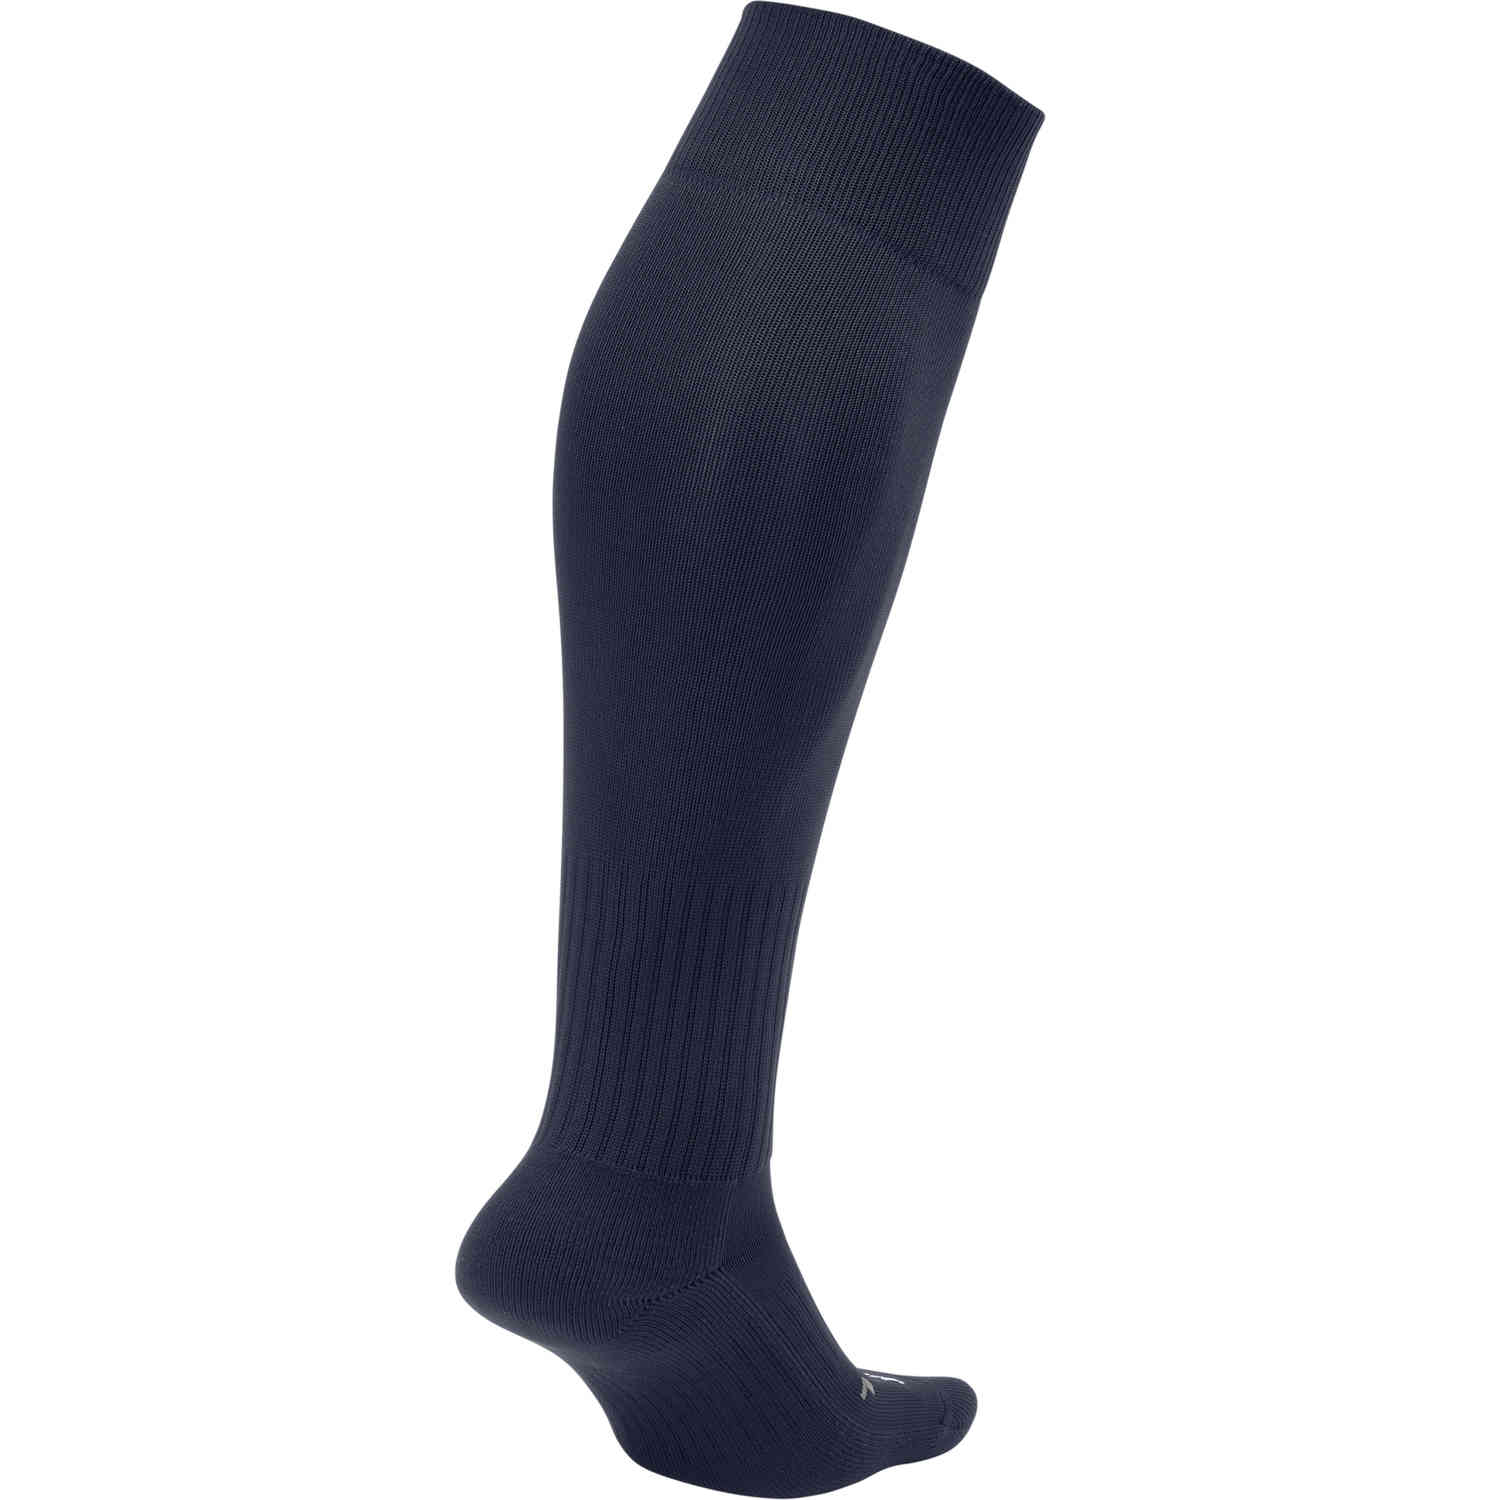 navy blue nike soccer socks